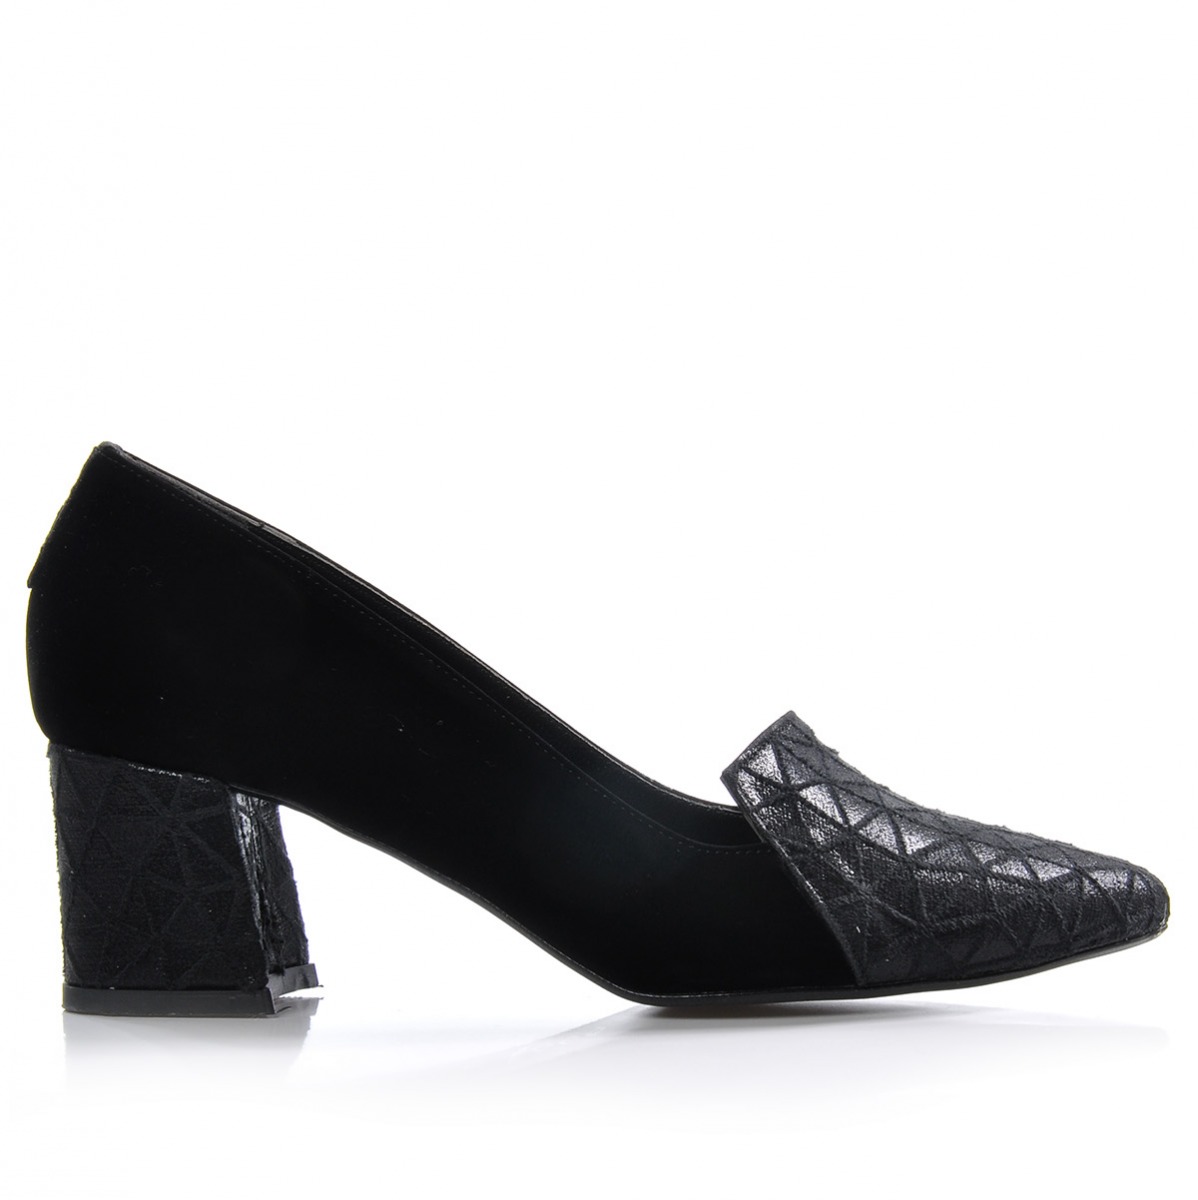 Flo Kadın  Siyah Klasik Topuklu Ayakkabı VZN-333Y. 3